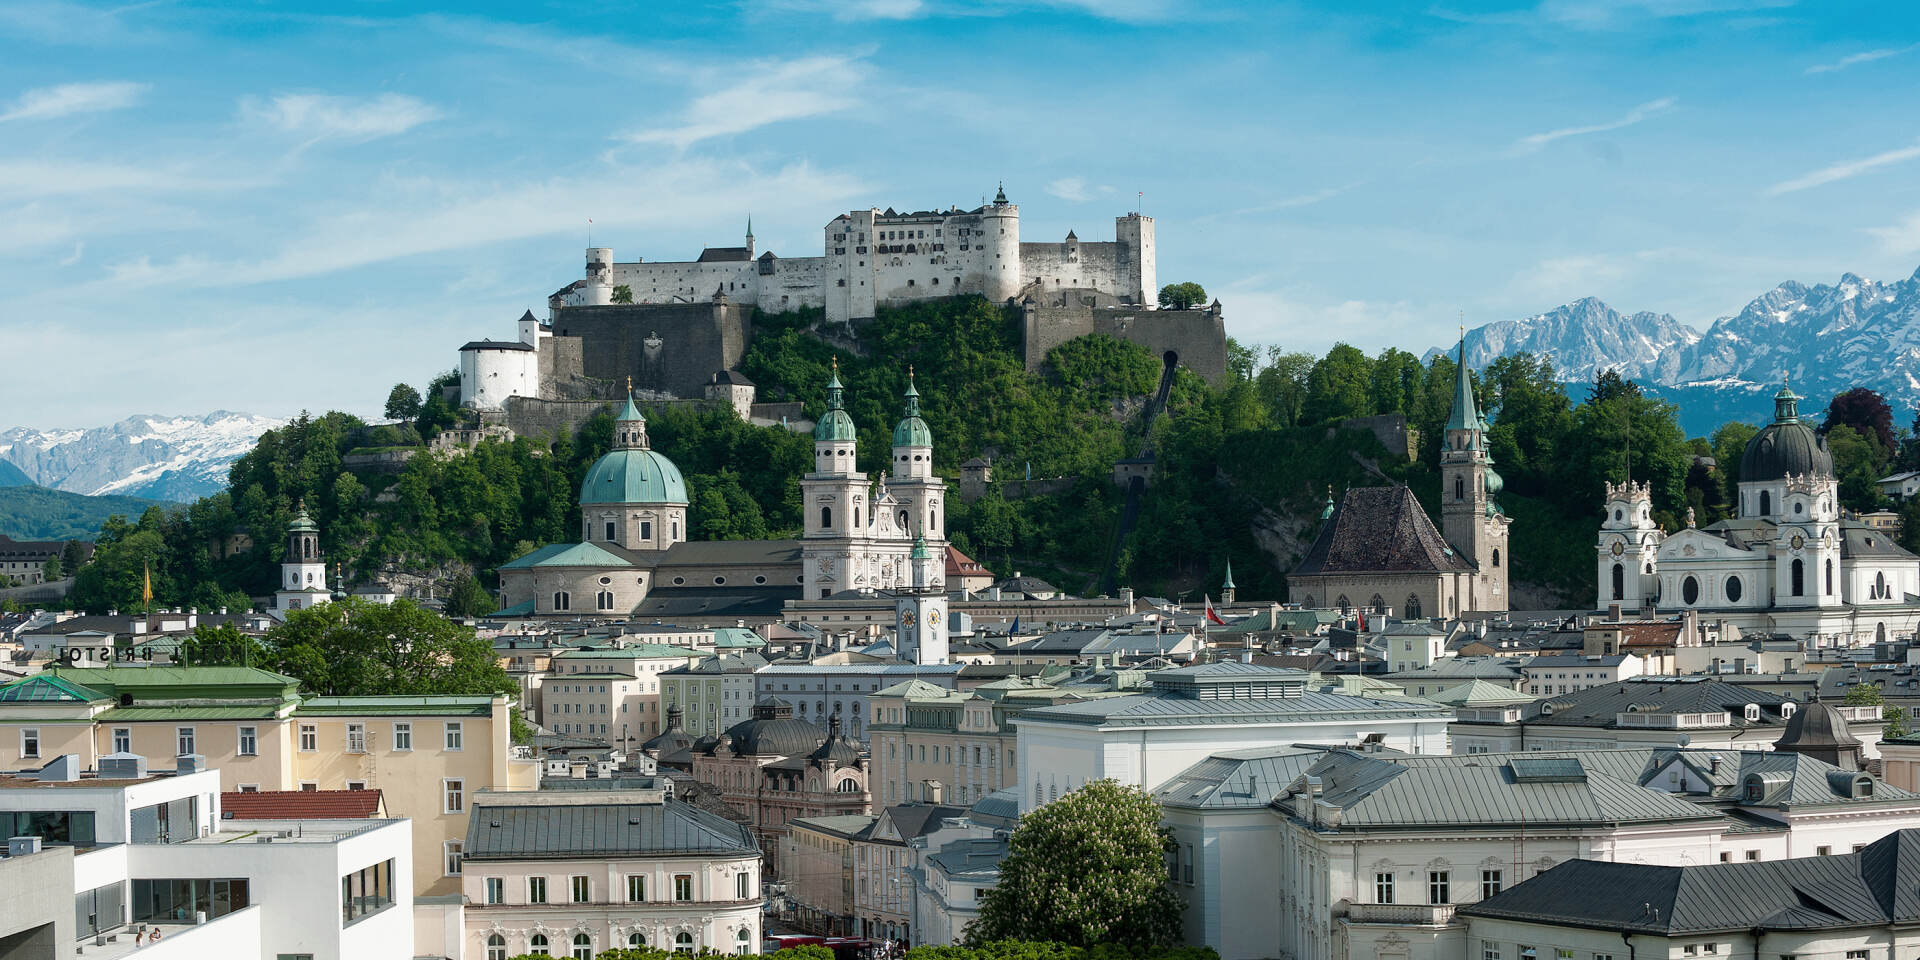 Salzburg - Stadtansicht mit Festung Hohensalzburg © Tourismus Salzburg GmbH